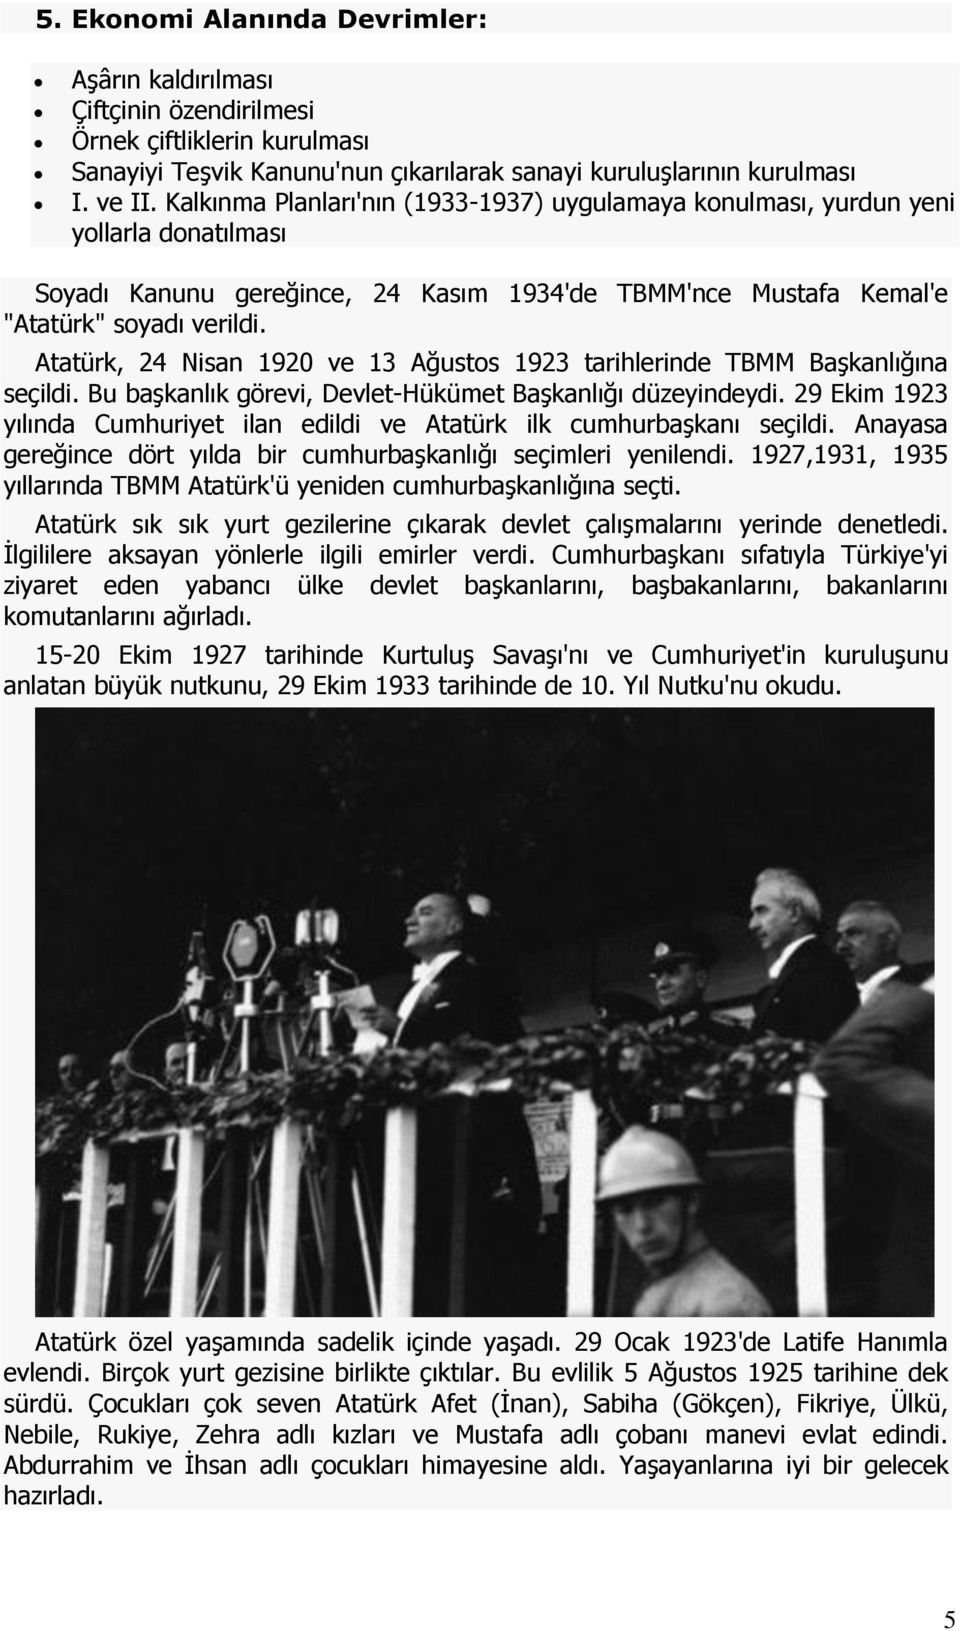 Atatürk, 24 Nisan 1920 ve 13 Ağustos 1923 tarihlerinde TBMM Başkanlığına seçildi. Bu başkanlık görevi, Devlet-Hükümet Başkanlığı düzeyindeydi.